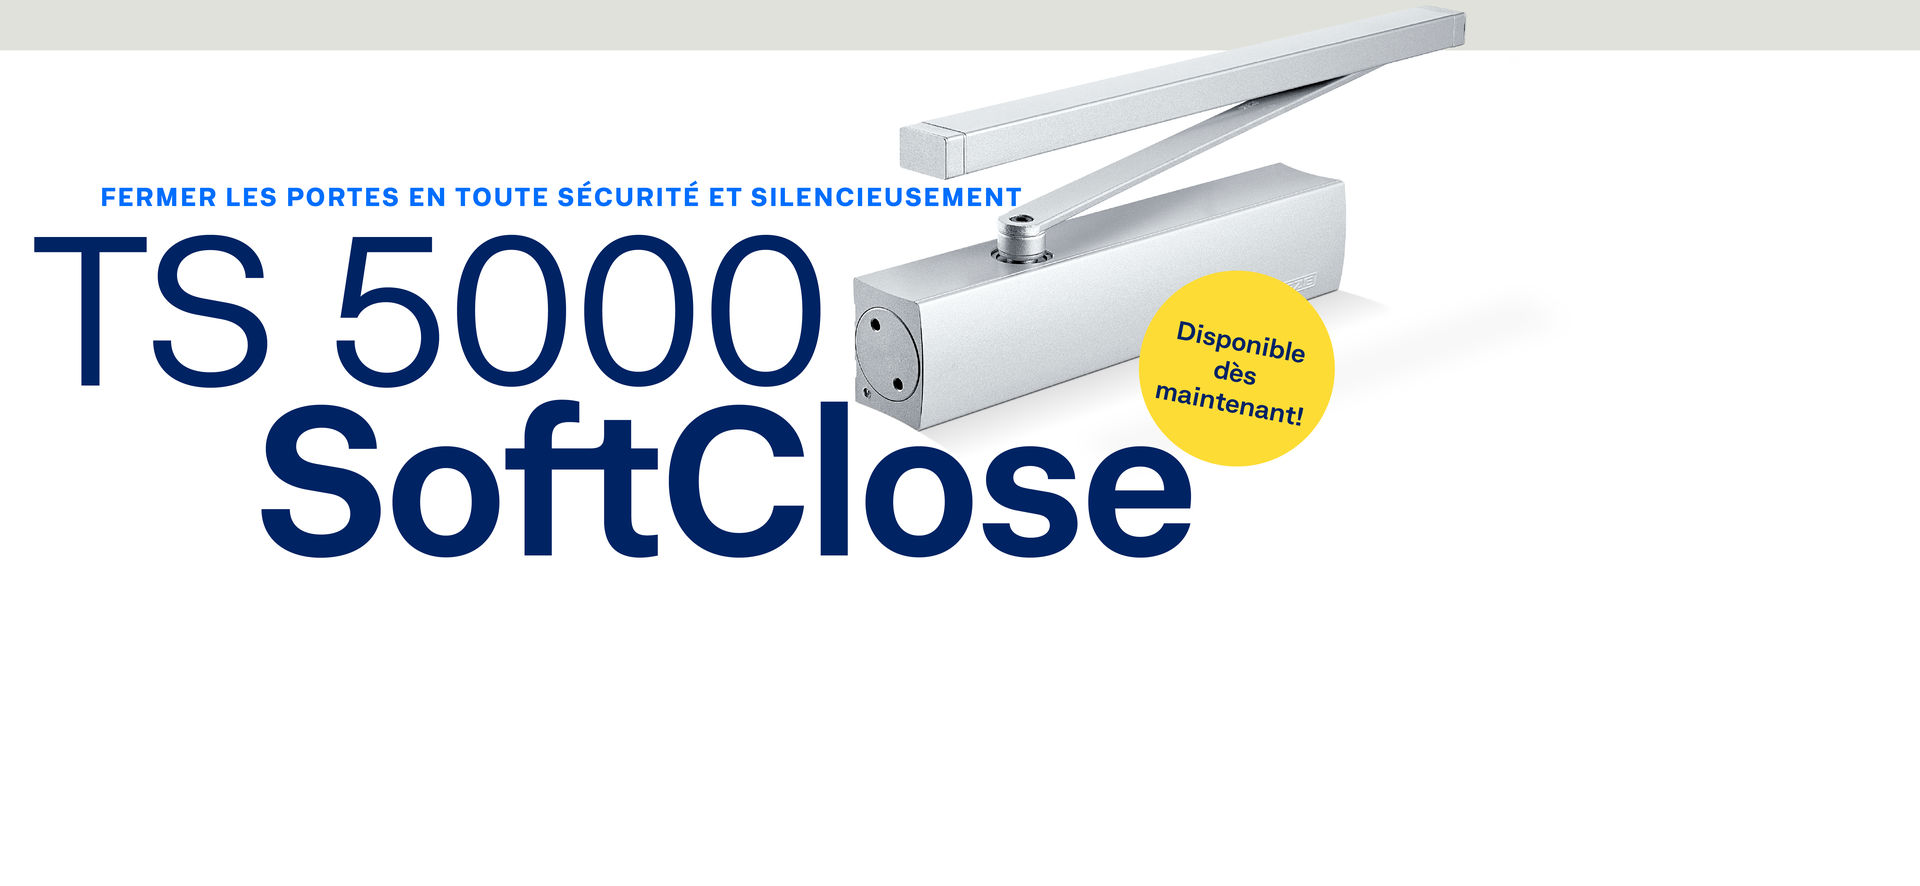 Notre nouveau TS 5000 SoftClose ferme vos portes en toute sécurité et silencieusement.